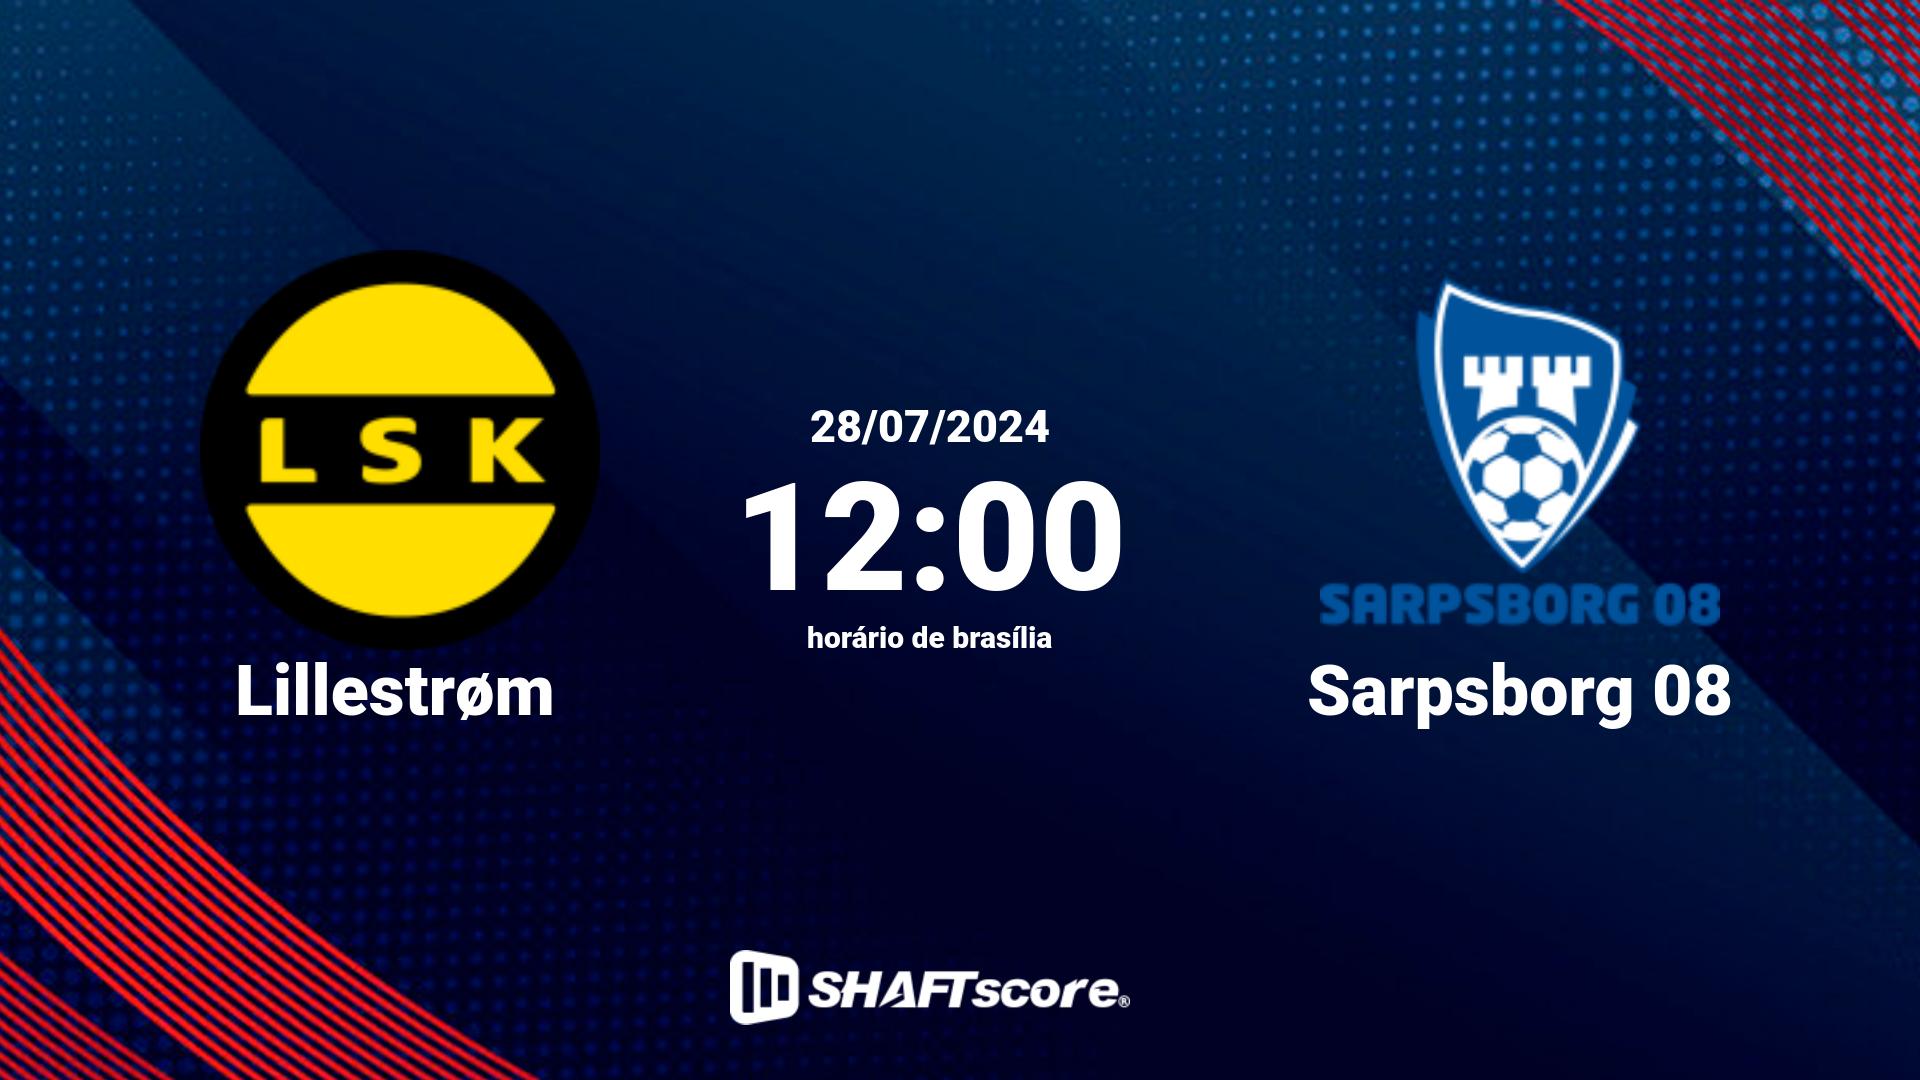 Estatísticas do jogo Lillestrøm vs Sarpsborg 08 28.07 12:00